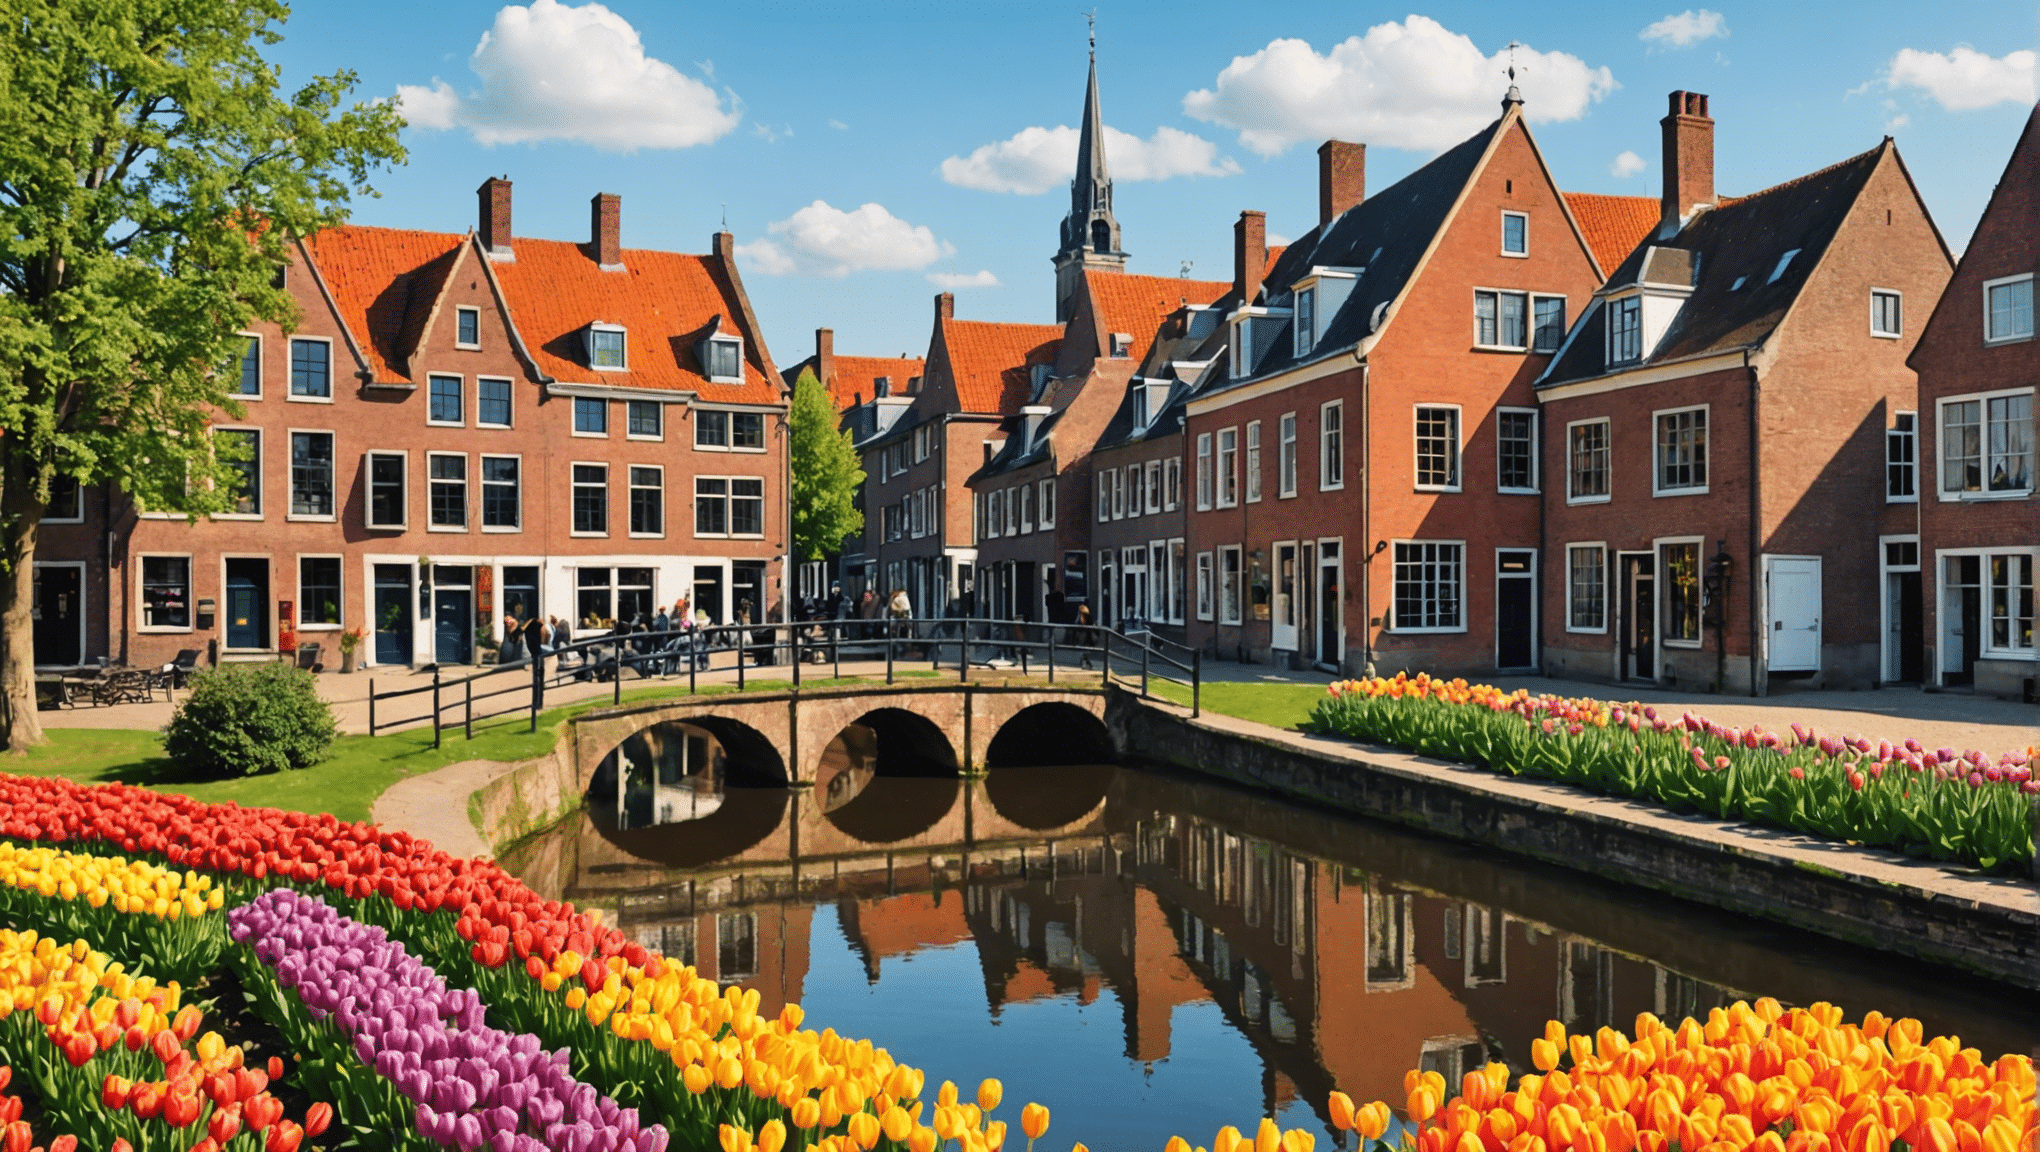 象徴的な風車、壮大なチューリップ畑、魅力的な運河のあるこの国を巡る忘れられない旅で、オランダの魅力を発見してください。